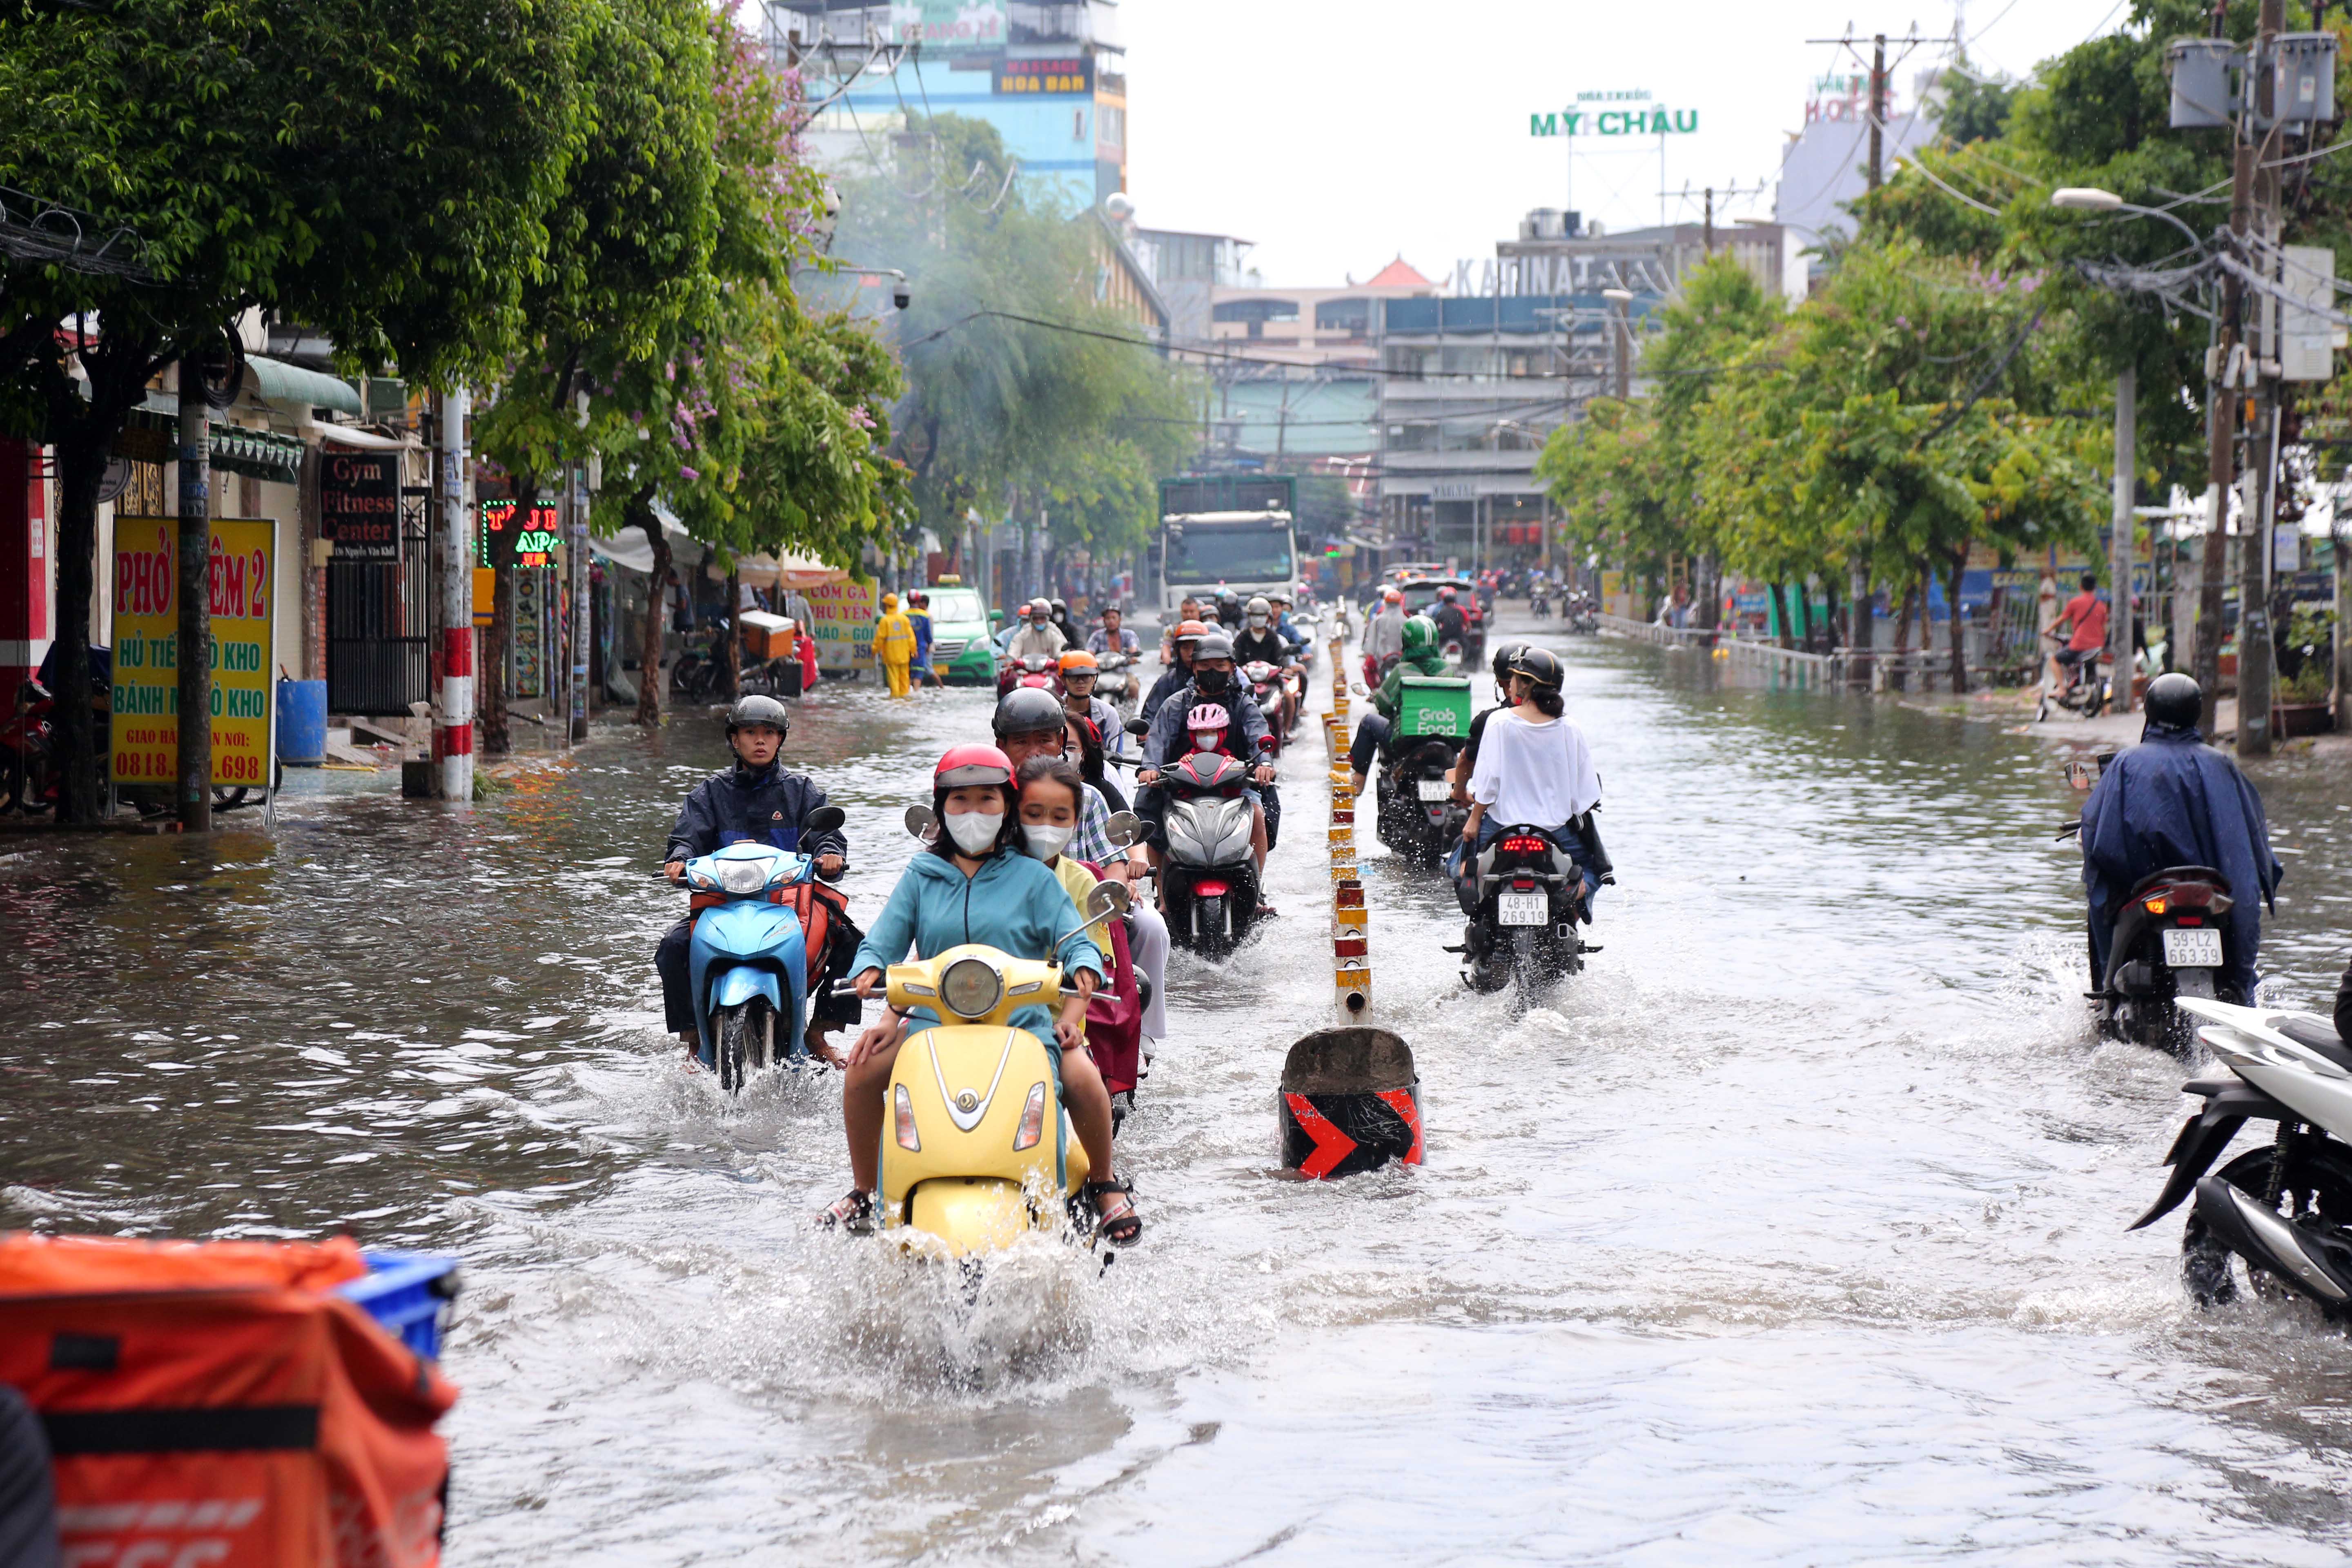 Mưa lớn sau chuỗi ngày nắng nóng, người dân TP.HCM lại bì bõm lội nước vì đường ngập - 1